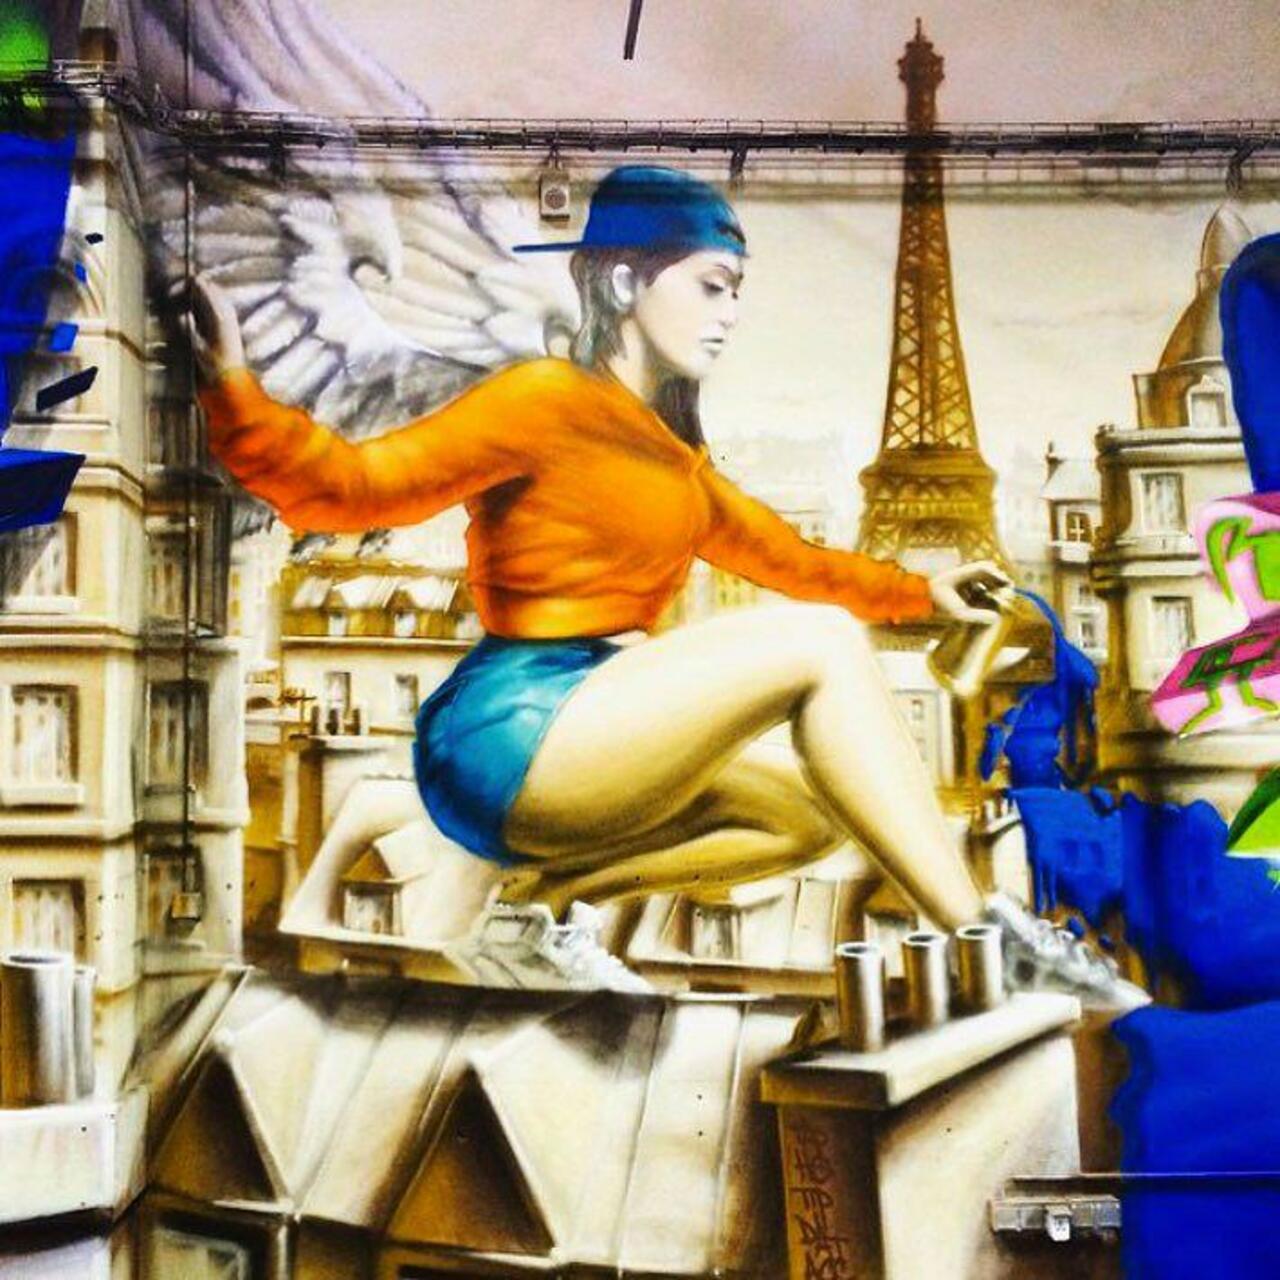 #Paris #graffiti photo by @jeanlucr http://ift.tt/1KPVsmV #StreetArt http://t.co/owVvQuiIkN